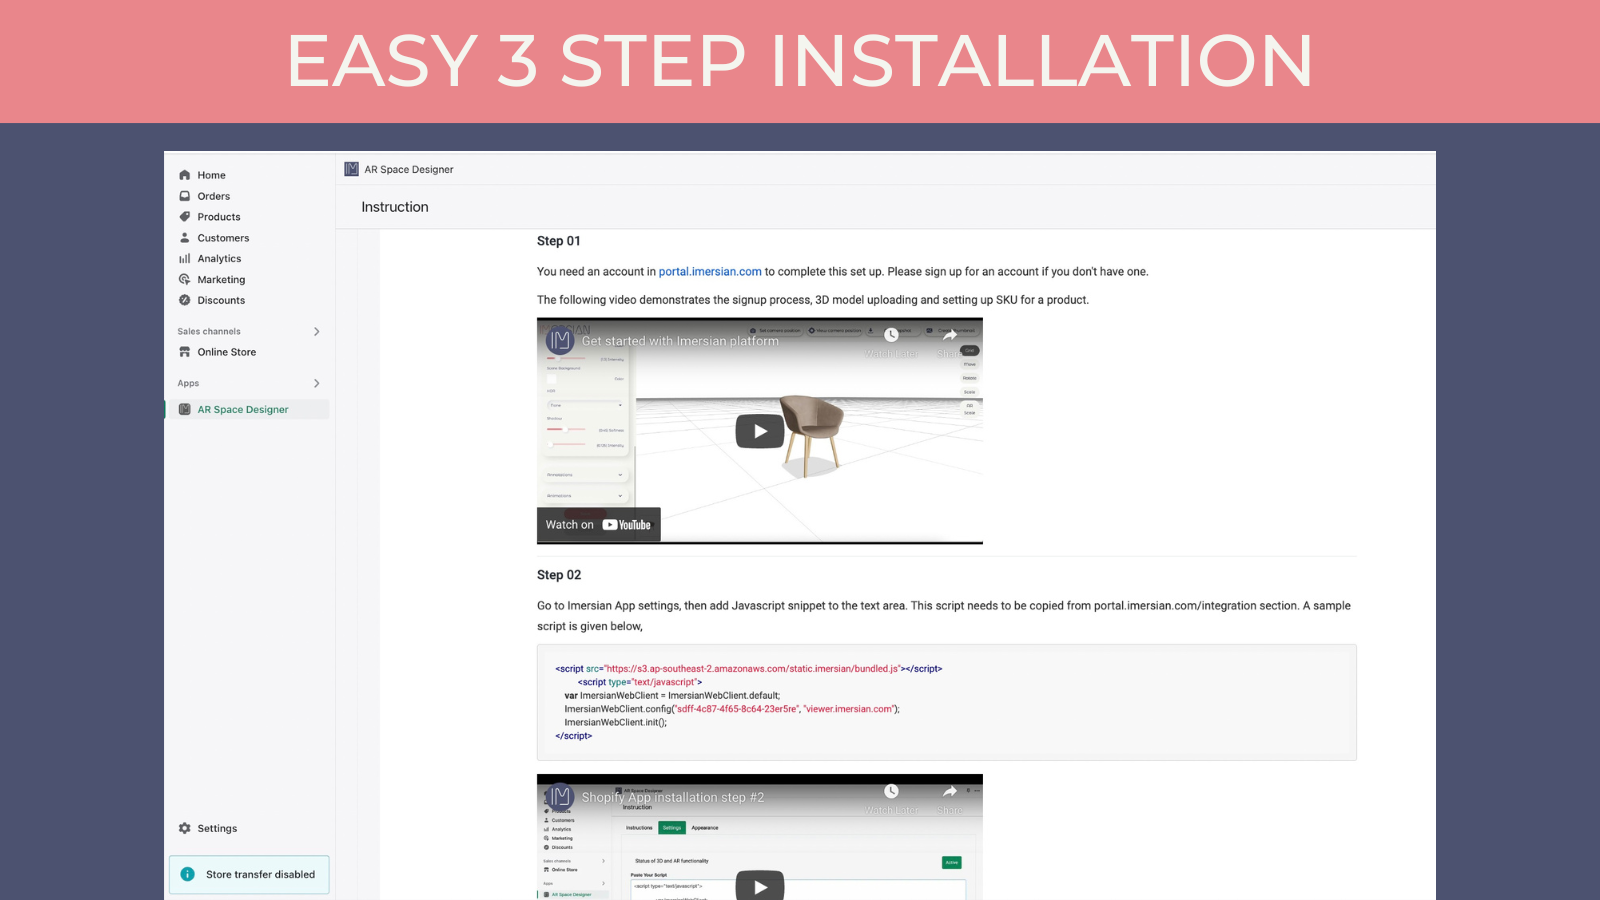 Easy 3 steps app installation